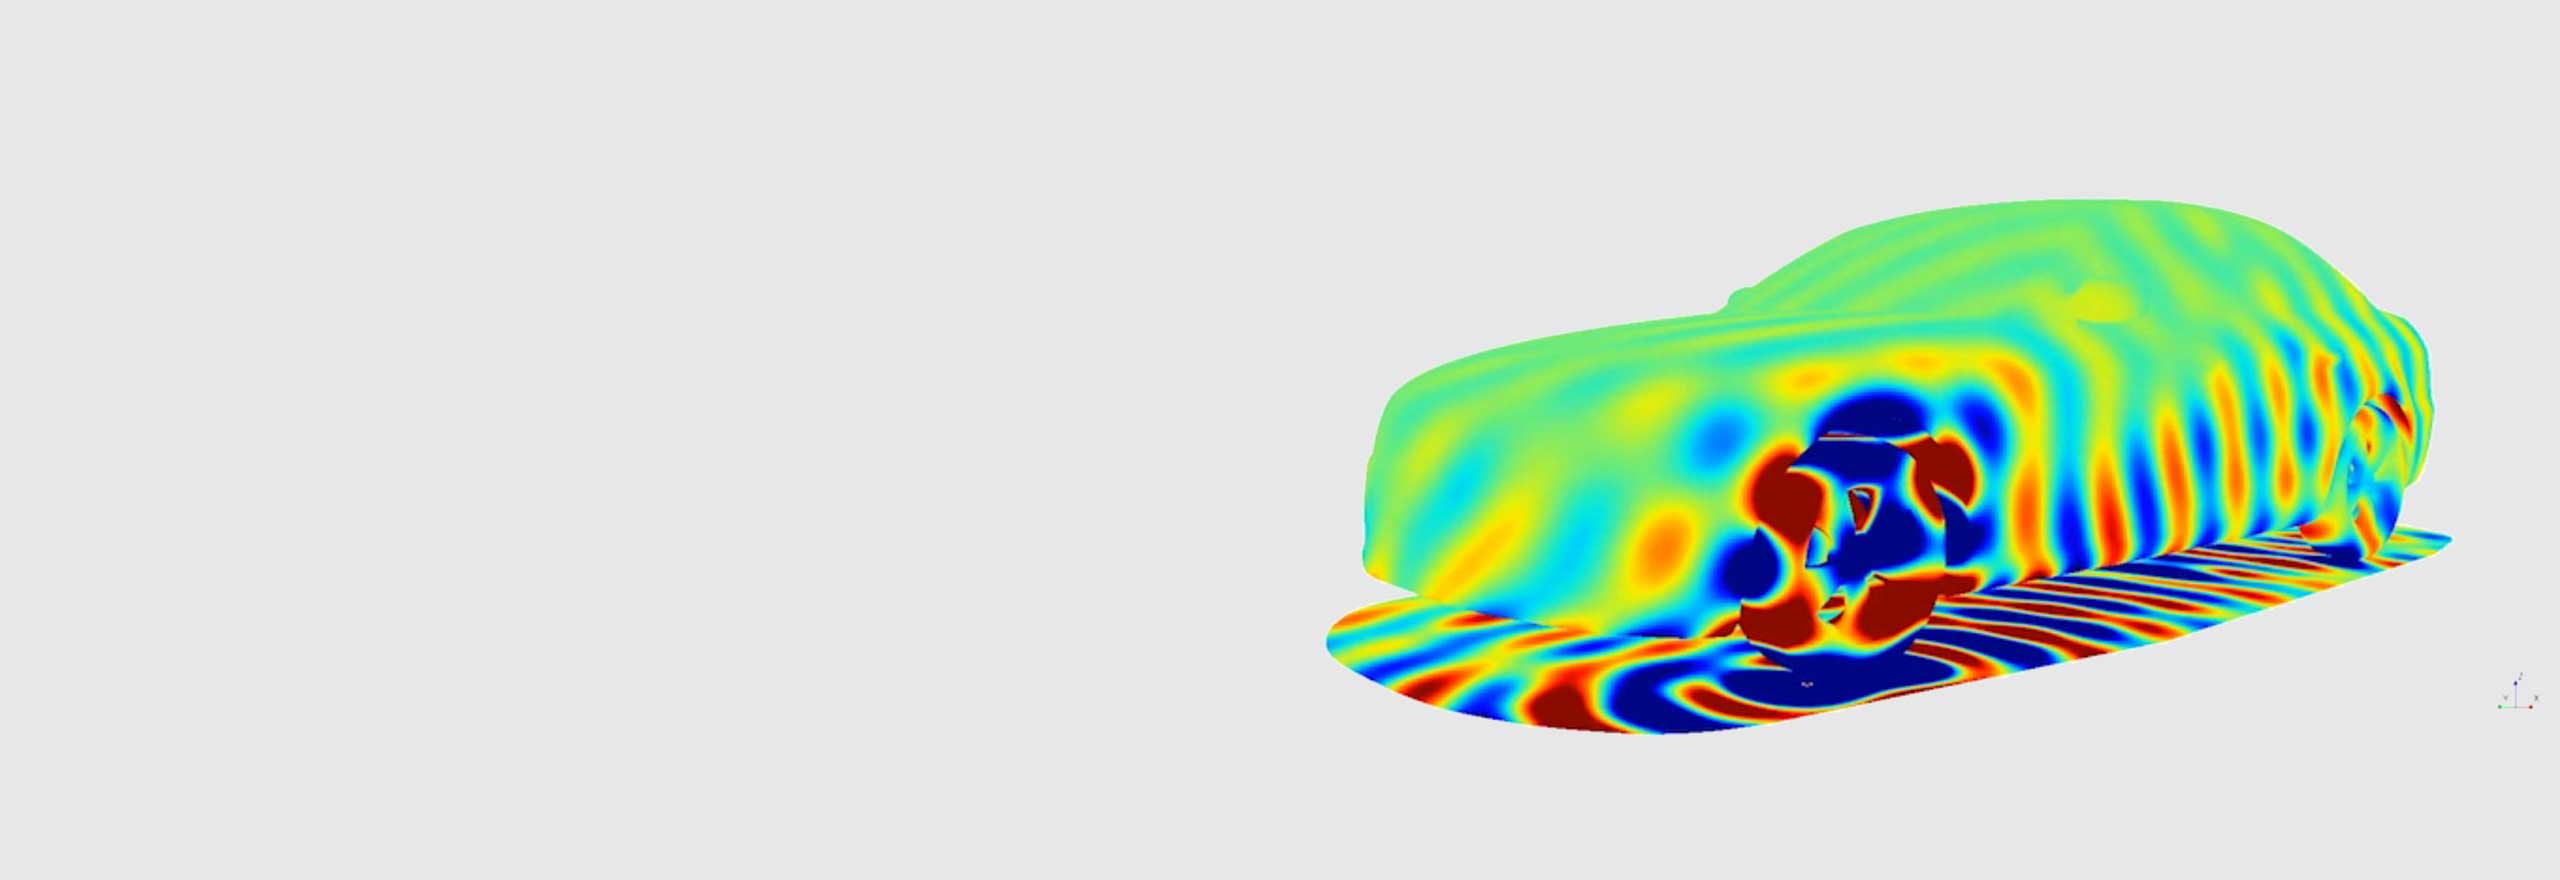 Simulação de ruído de passagem de um veículo usando o software de simulação acústica﻿ 